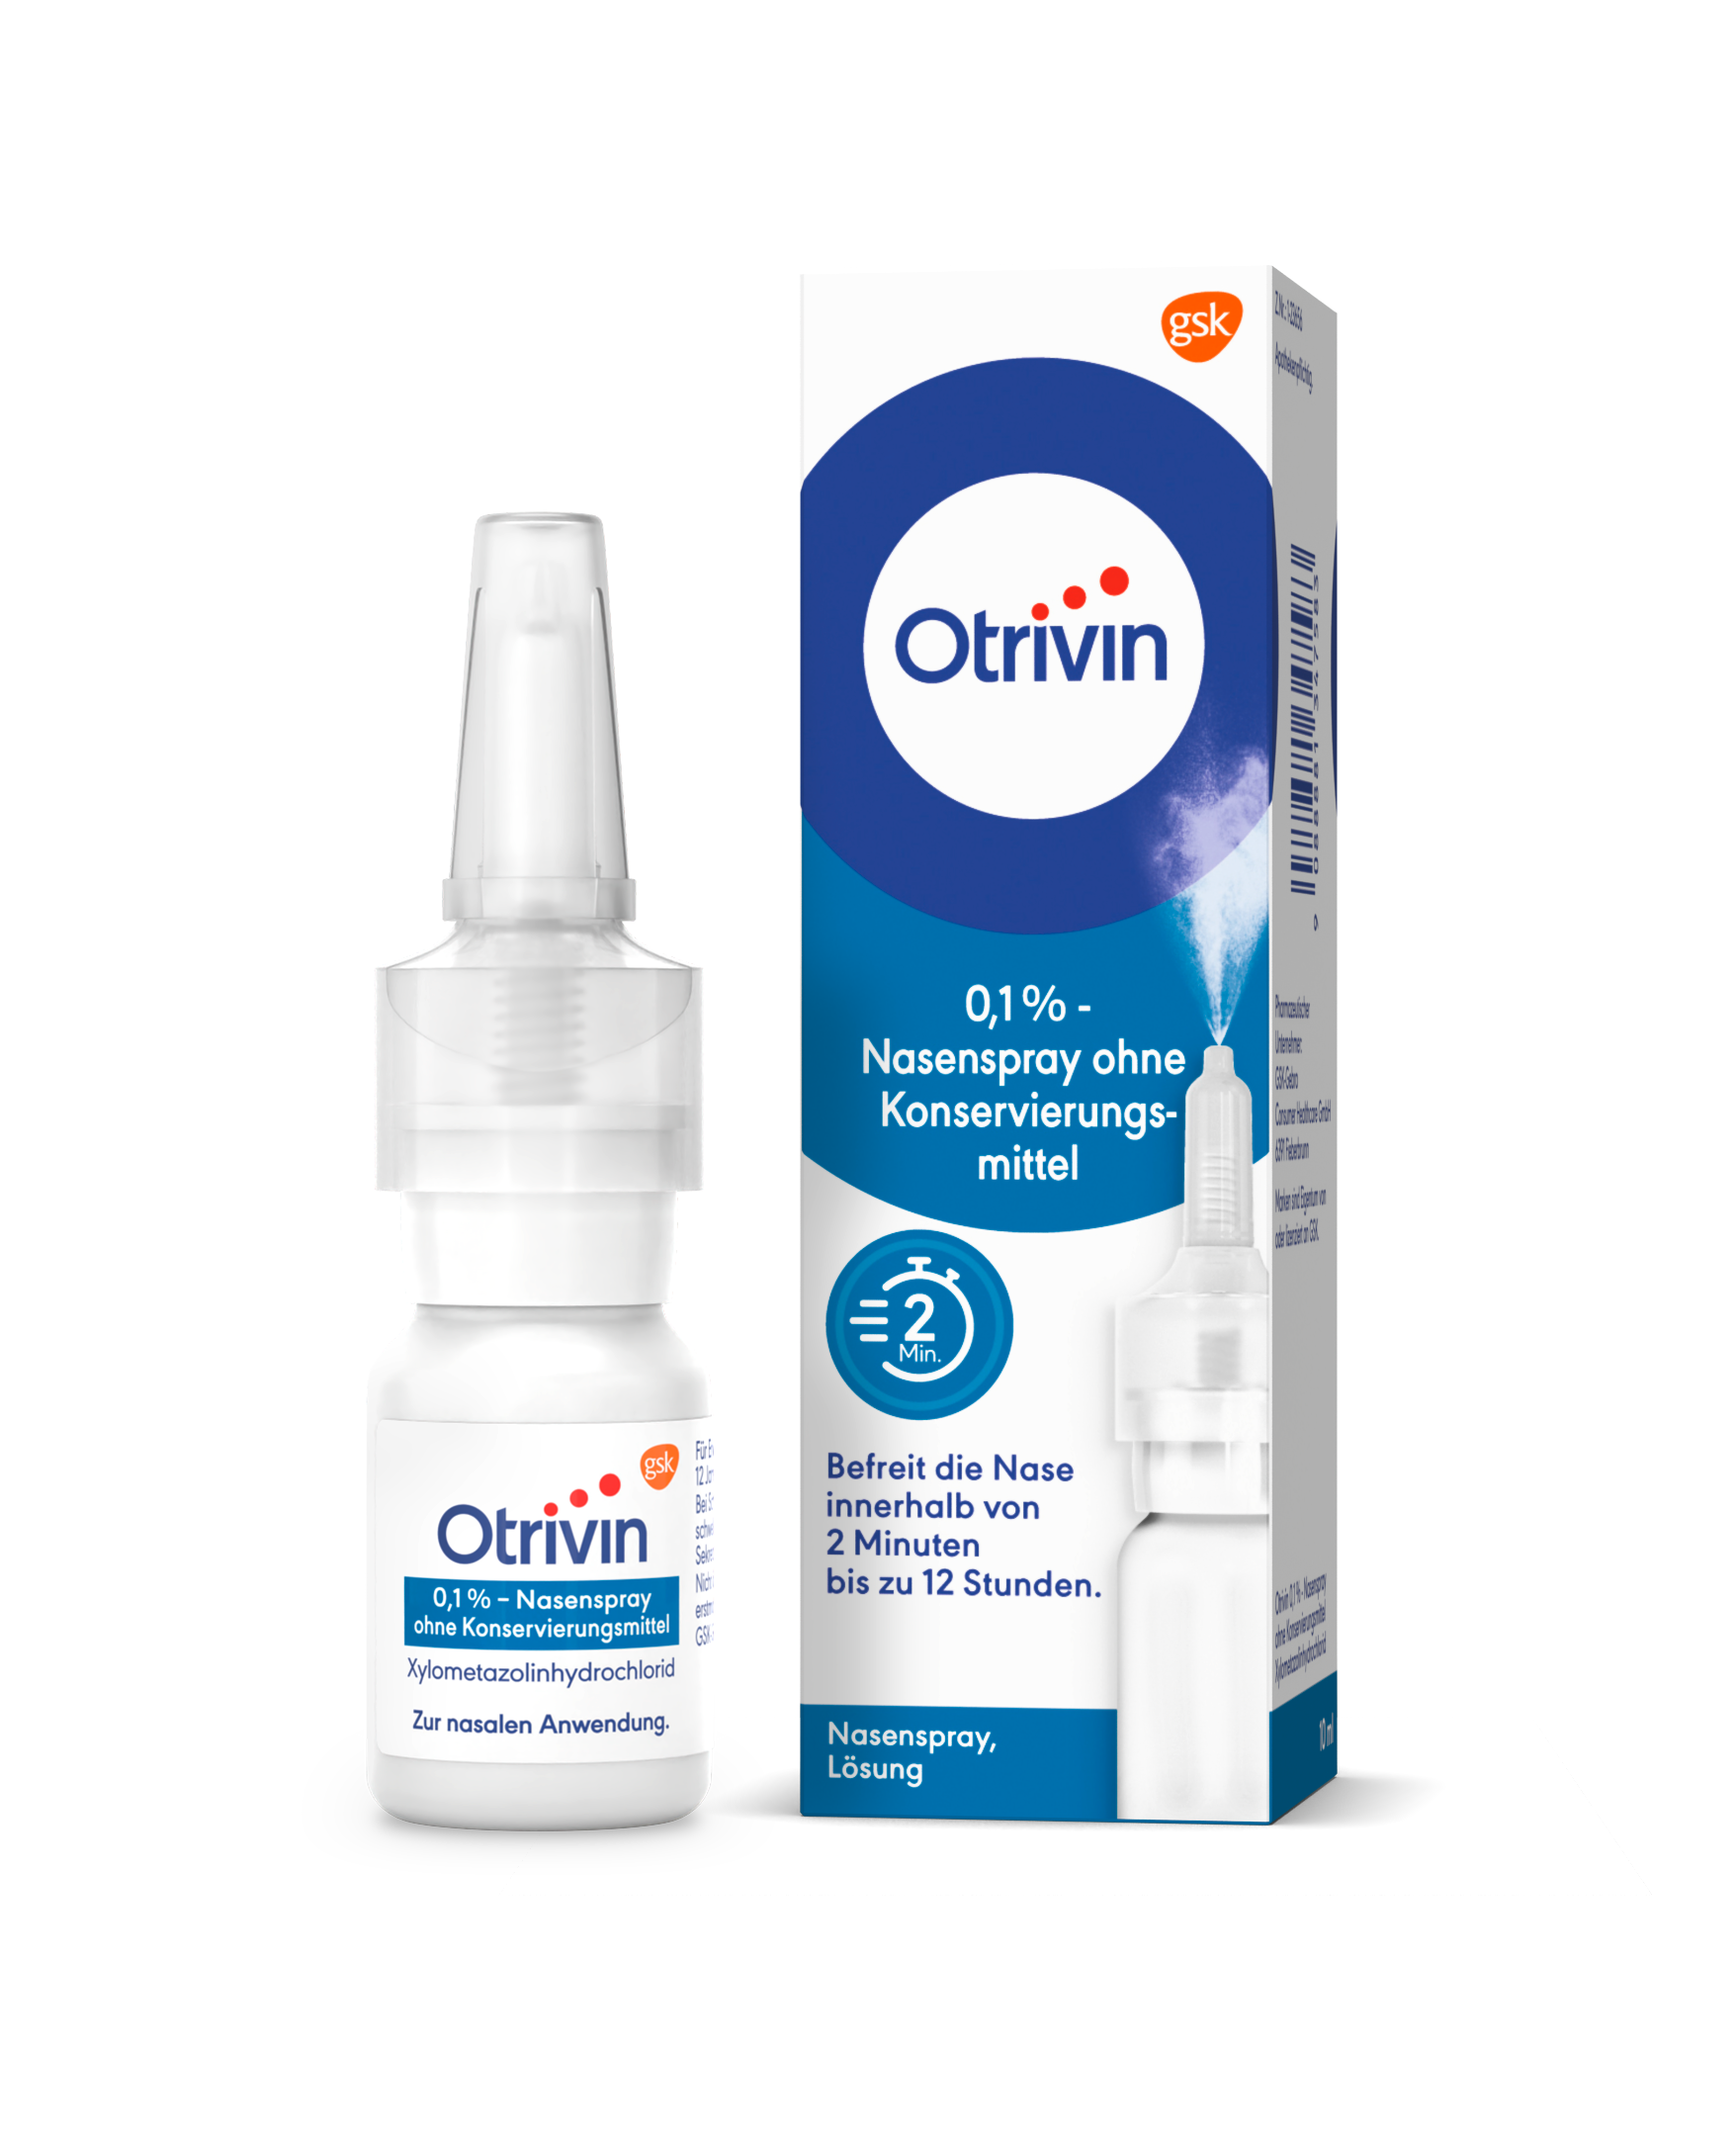 Otrivin 0,1% - Nasenspray ohne Konservierungsmittel